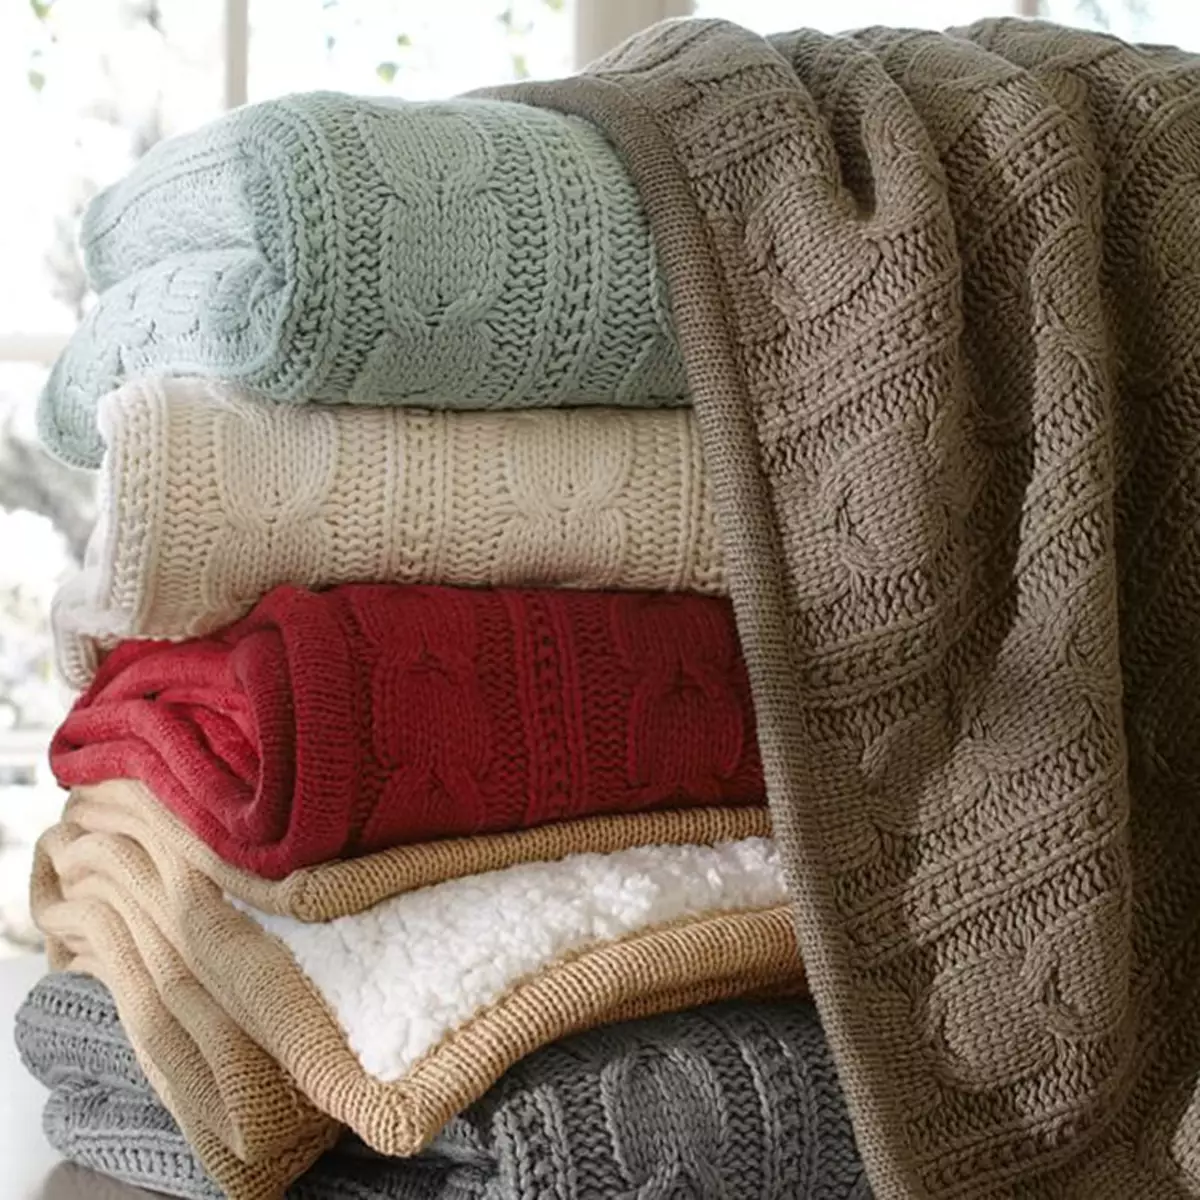 ผ้าห่มอุ่น: วิธีการเลือกผ้าคลุมเตียงที่สะดวกสบายบนเตียง? ผ้าห่มที่อบอุ่นวัสดุและการออกแบบขนาดและเคล็ดลับการดูแล 24937_24